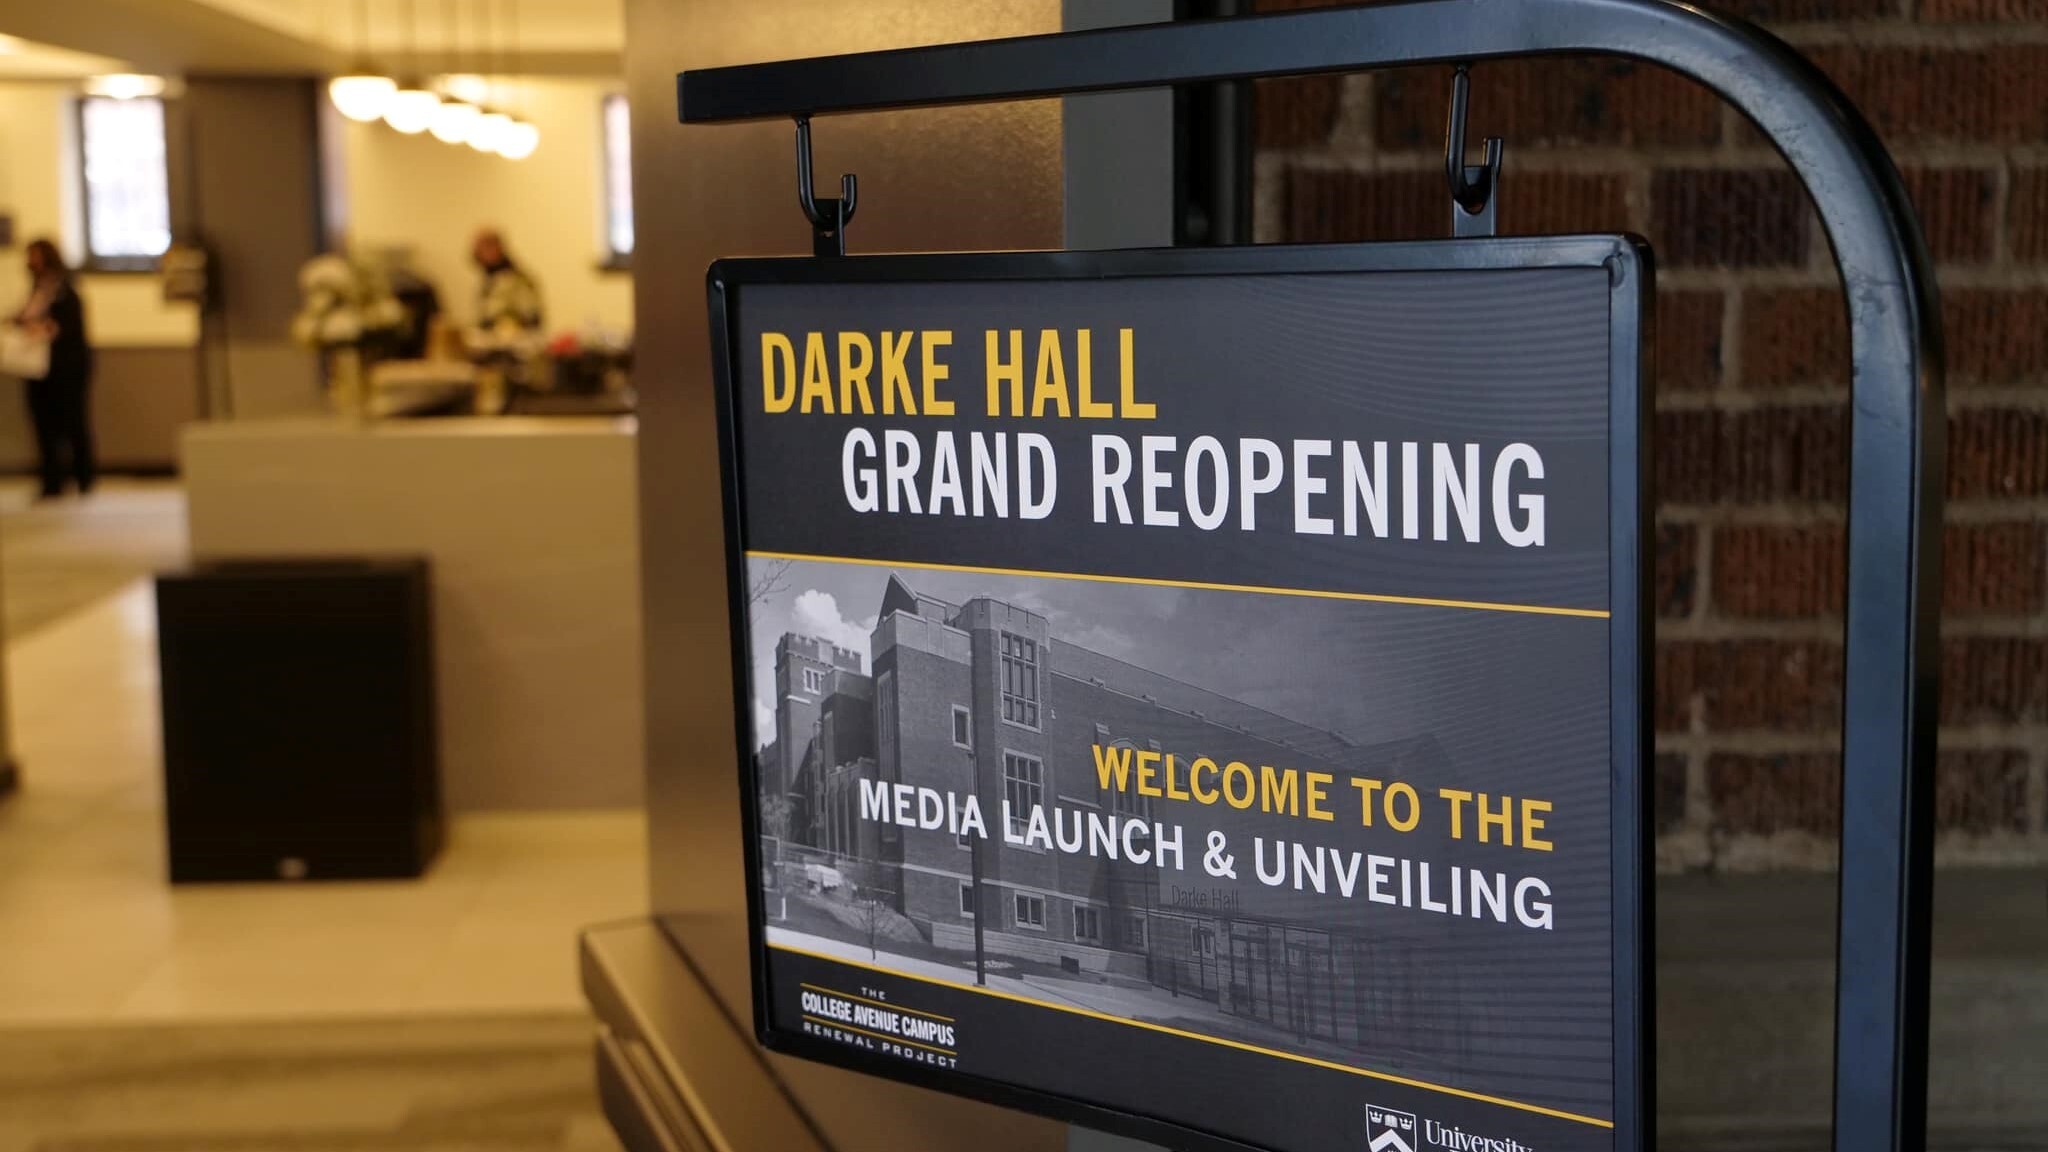 Darke Hall Grand Reopening!